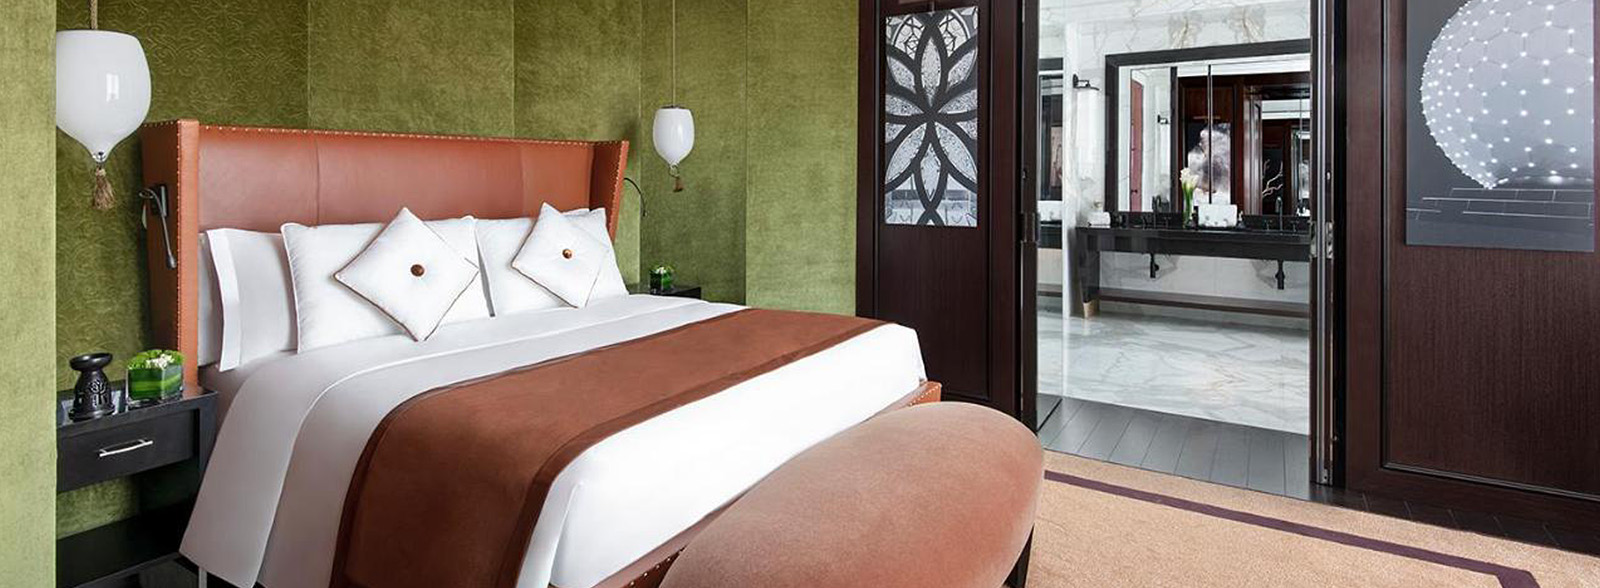 Banyan Tree Doha bedroom suite